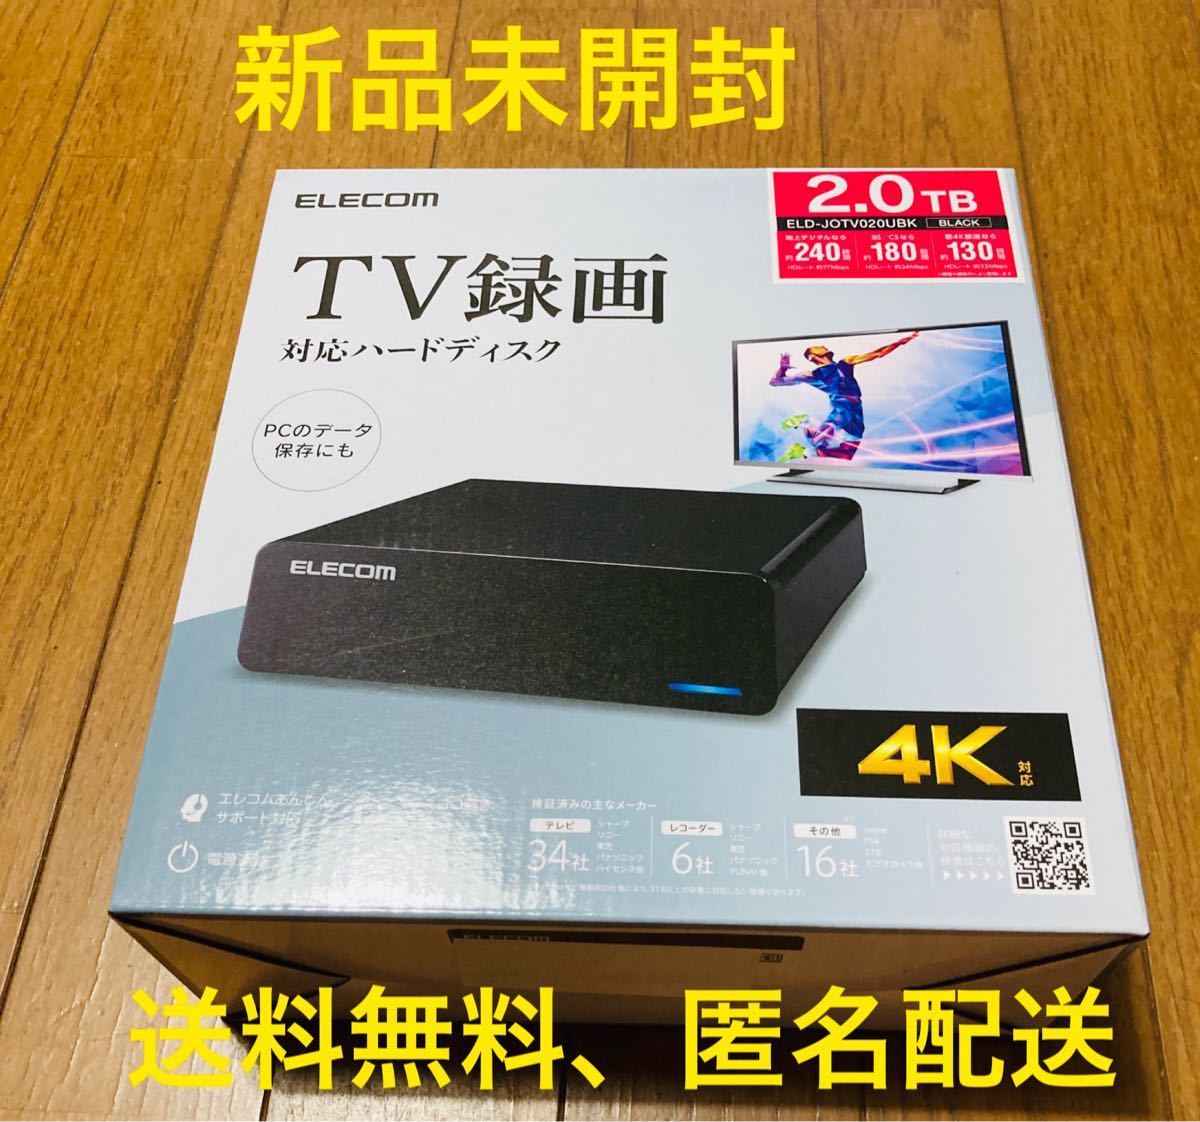 【エレコム】ELD-JOTV020UBK 外付けハードディスク 2TB 黒